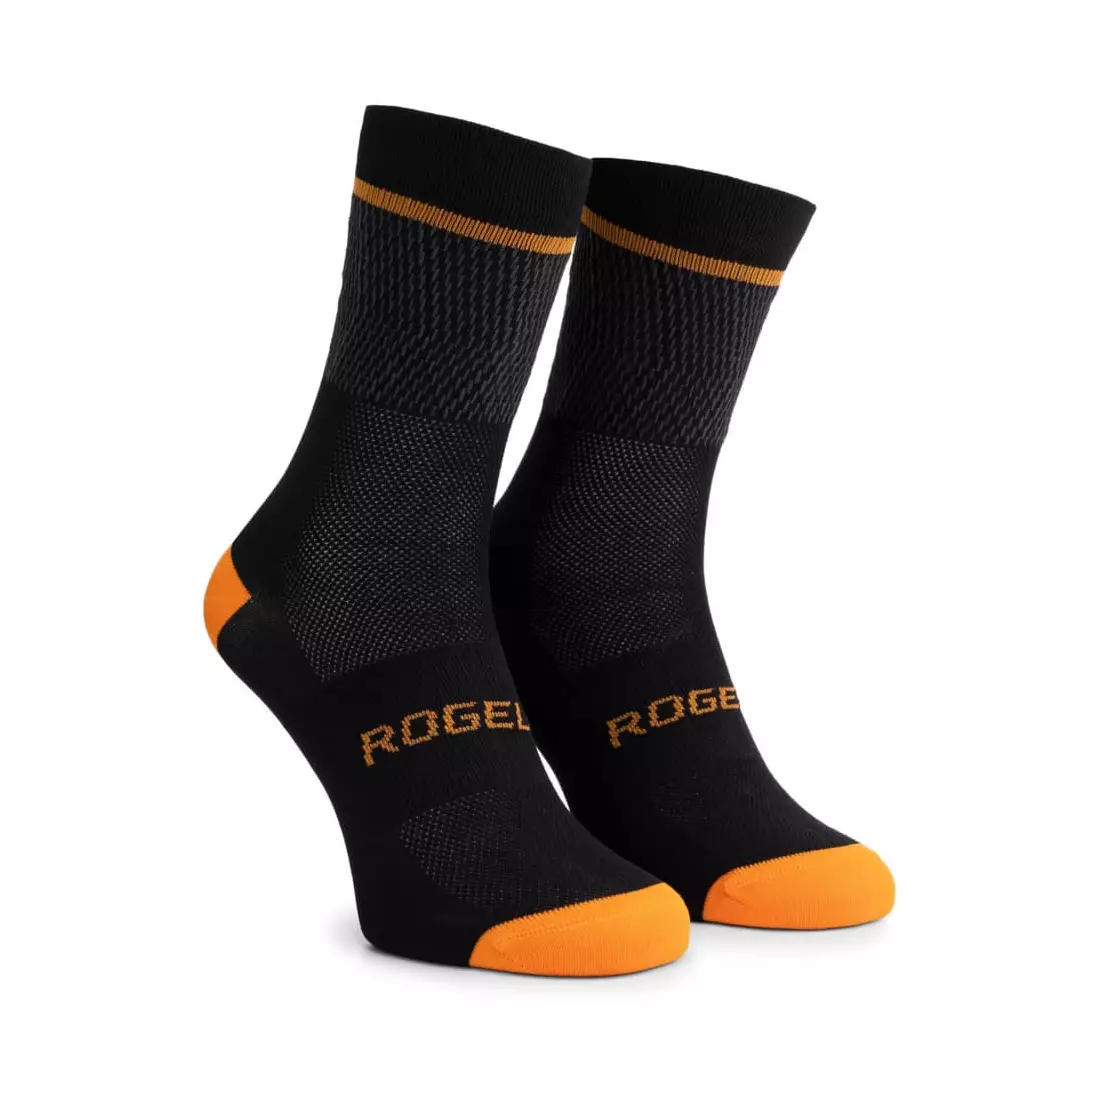 Rogelli HERO II cyklistické/športové ponožky, čierna a oranžová